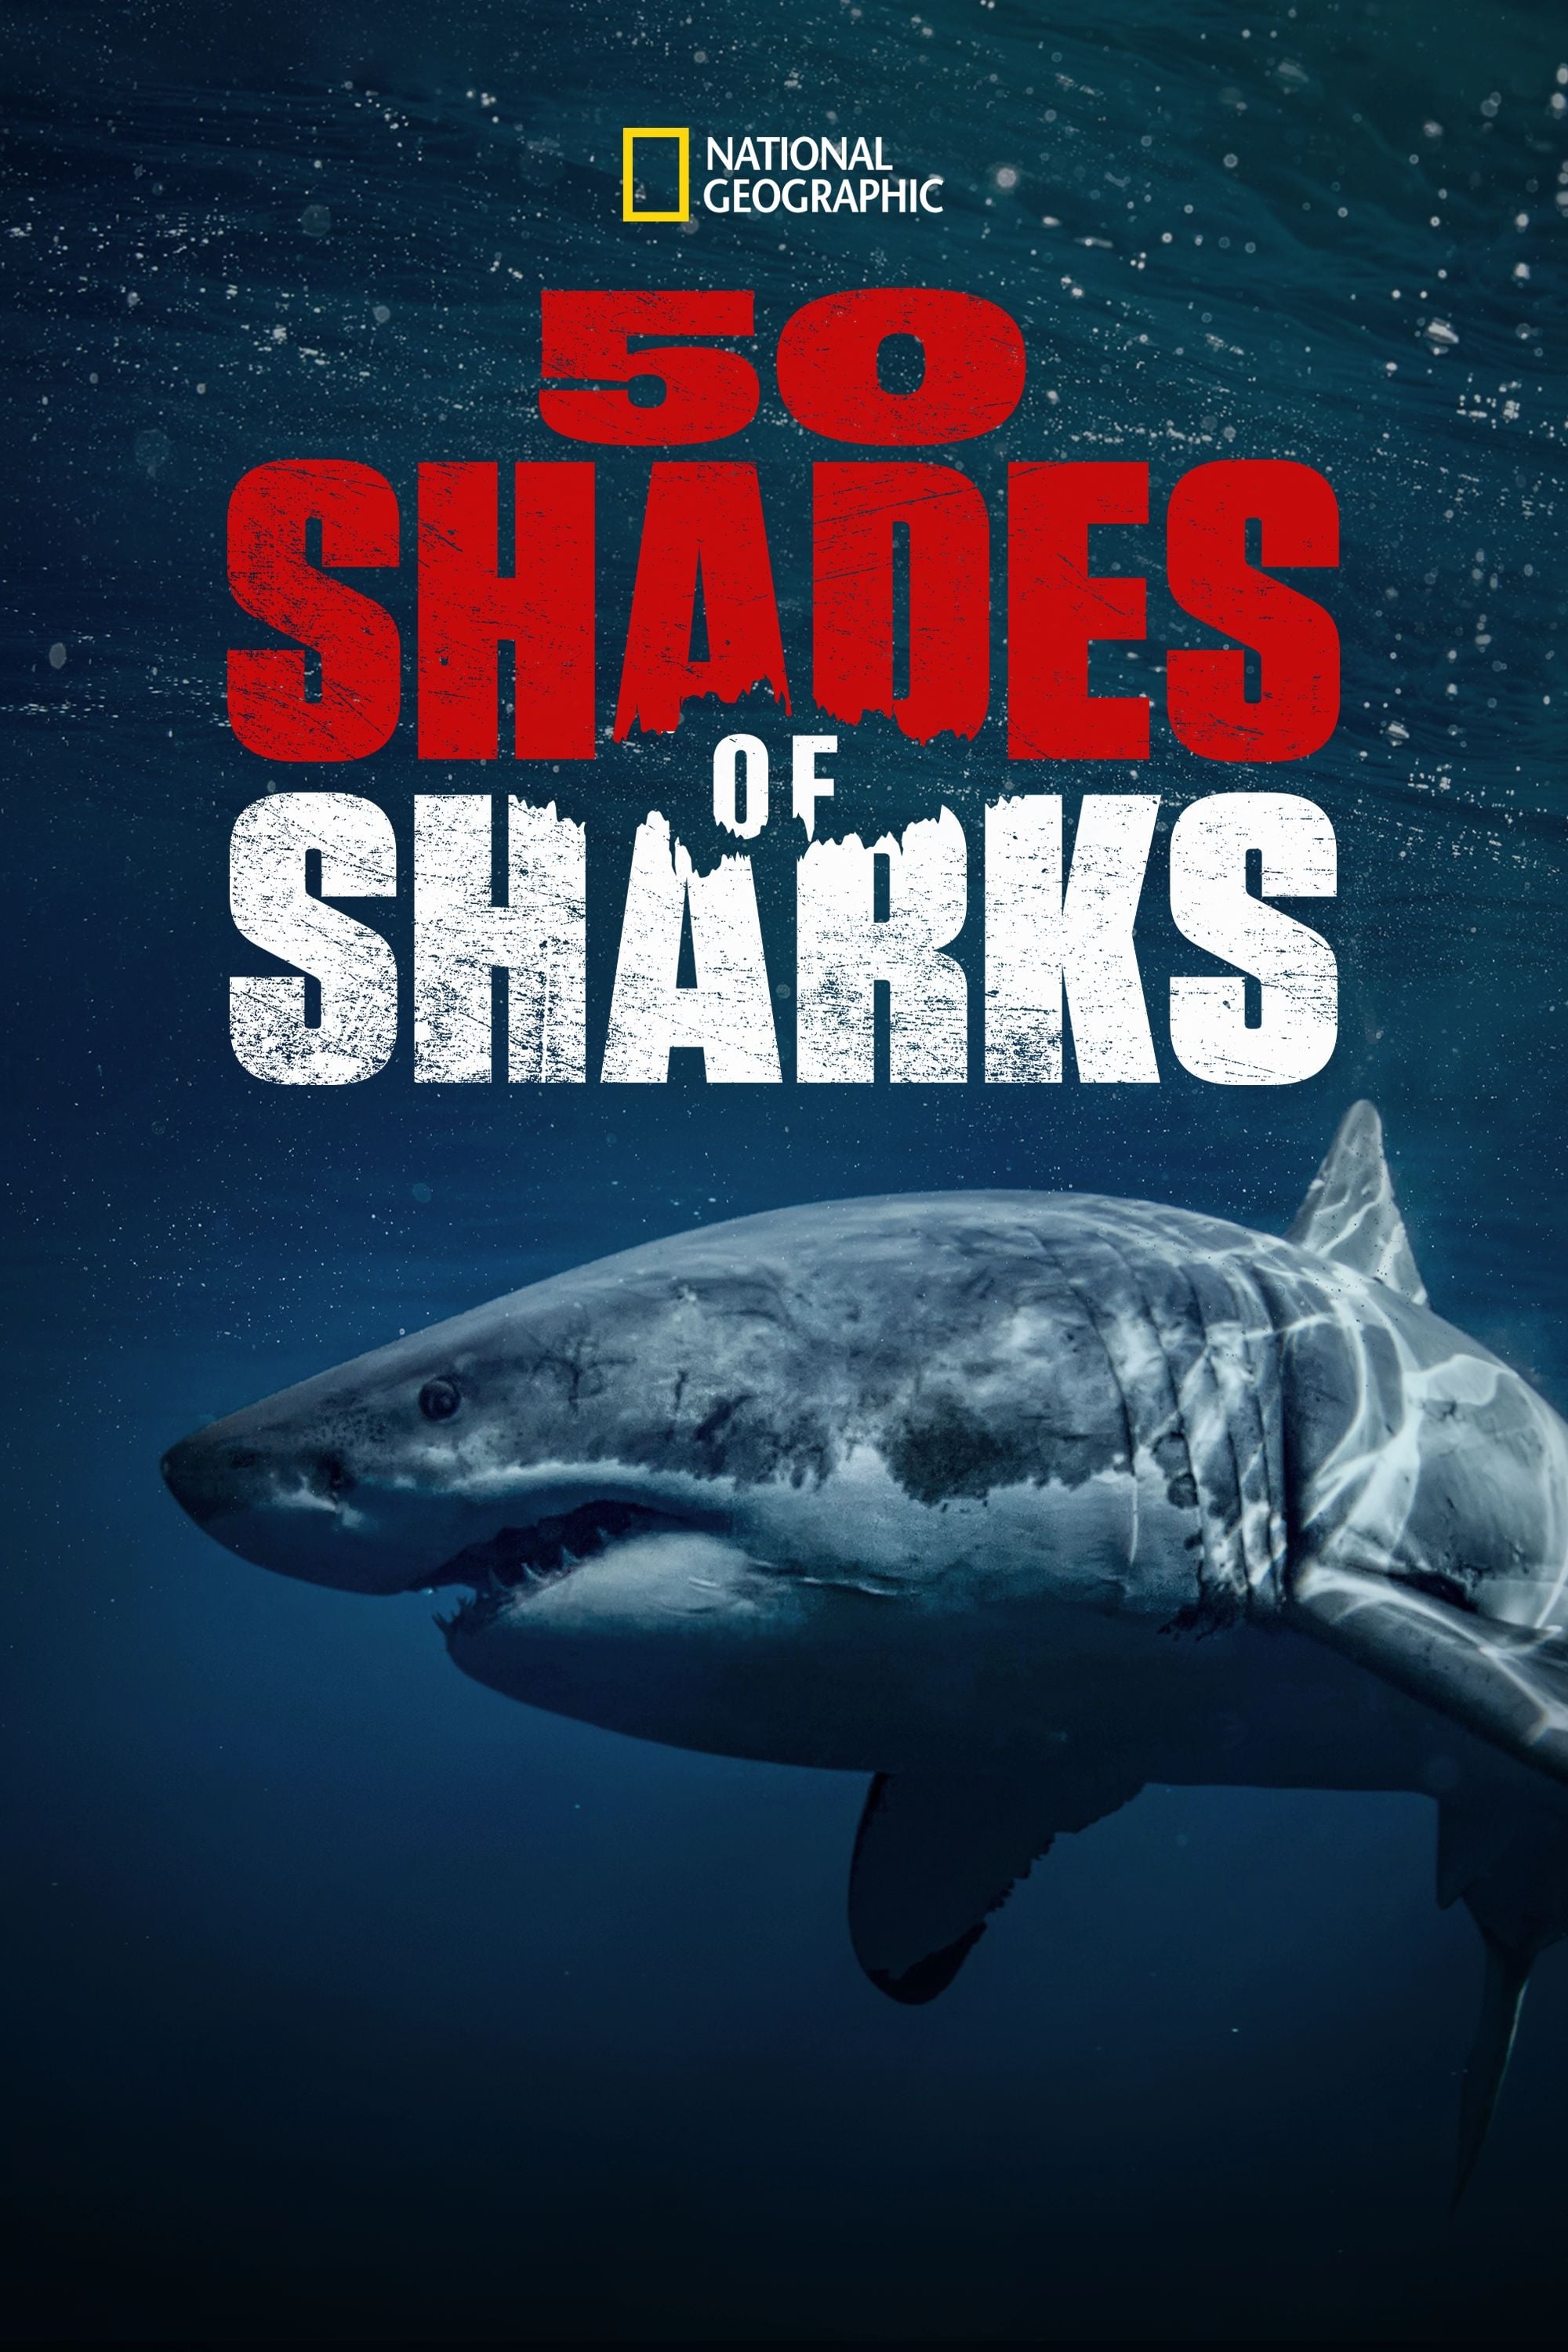 50 Shades of Sharks